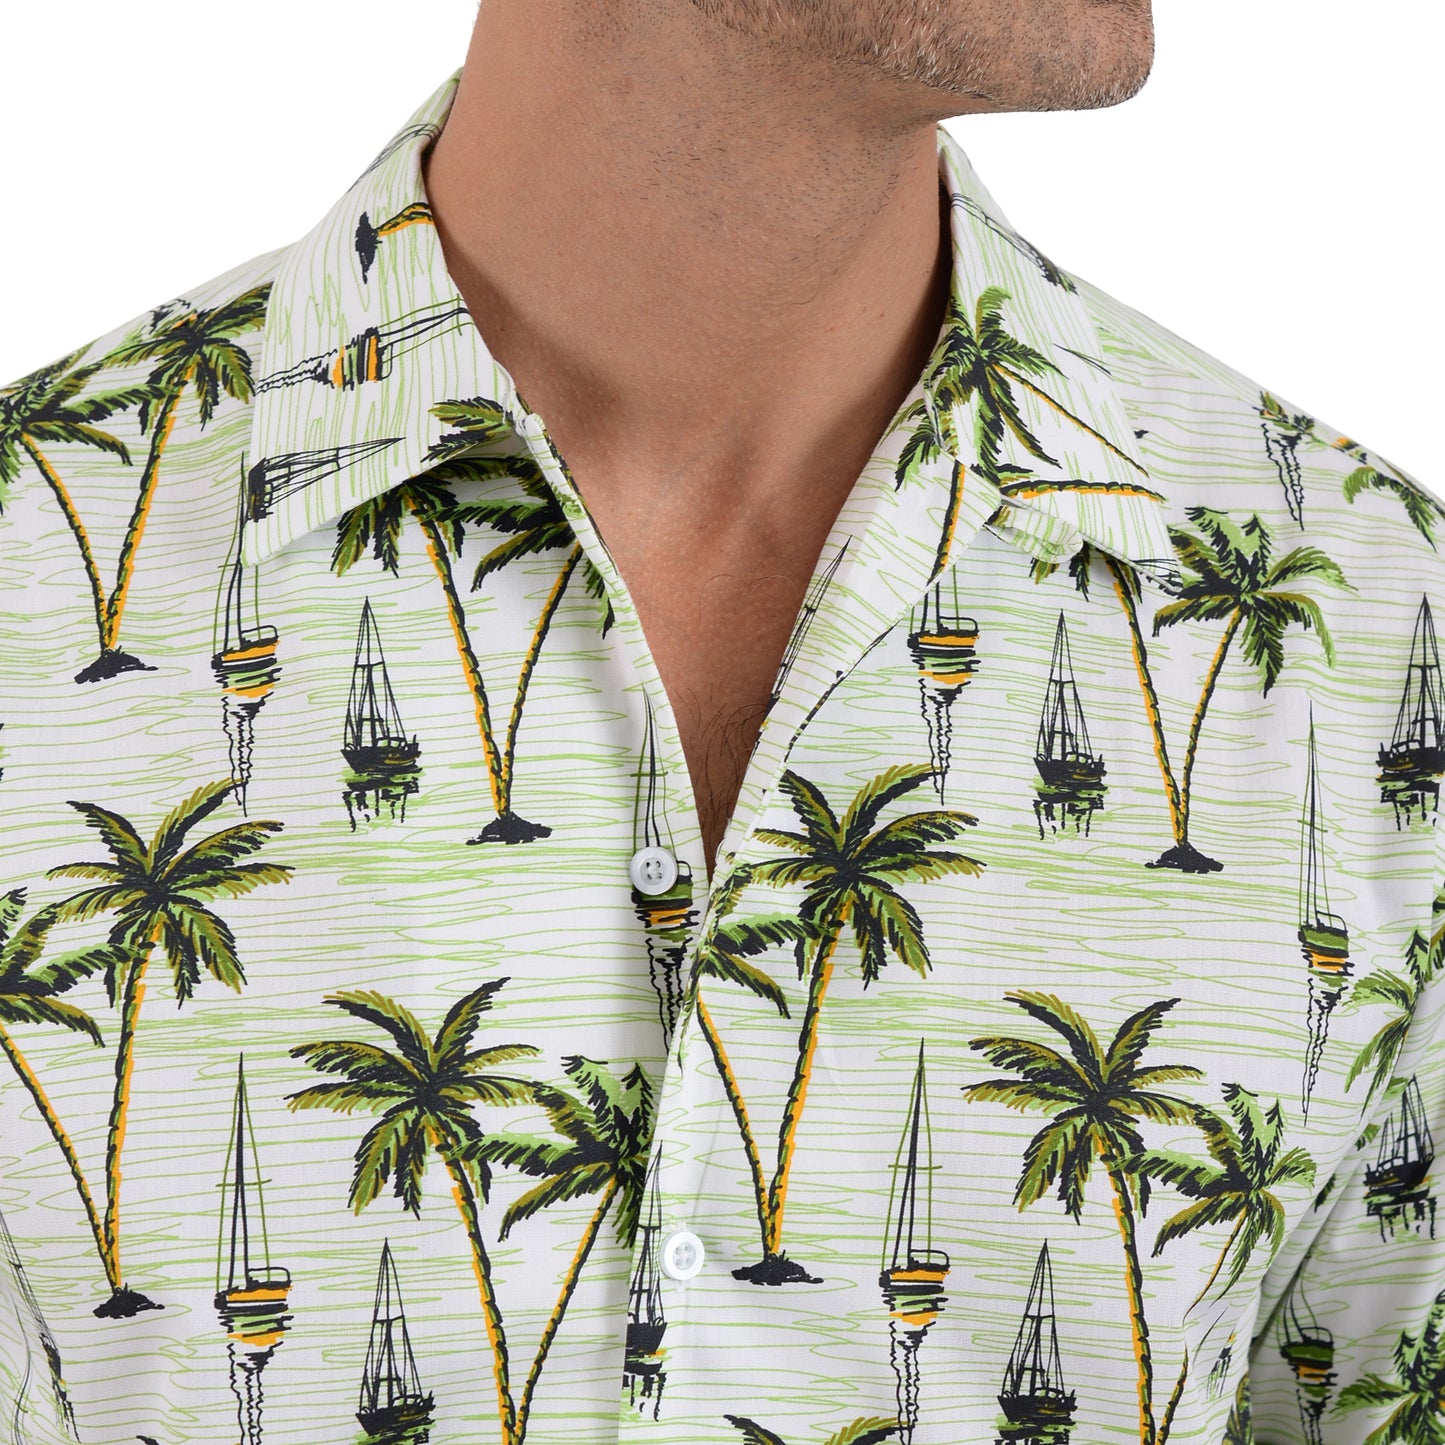 Camisa manga corta con estampado de palmeras en verde